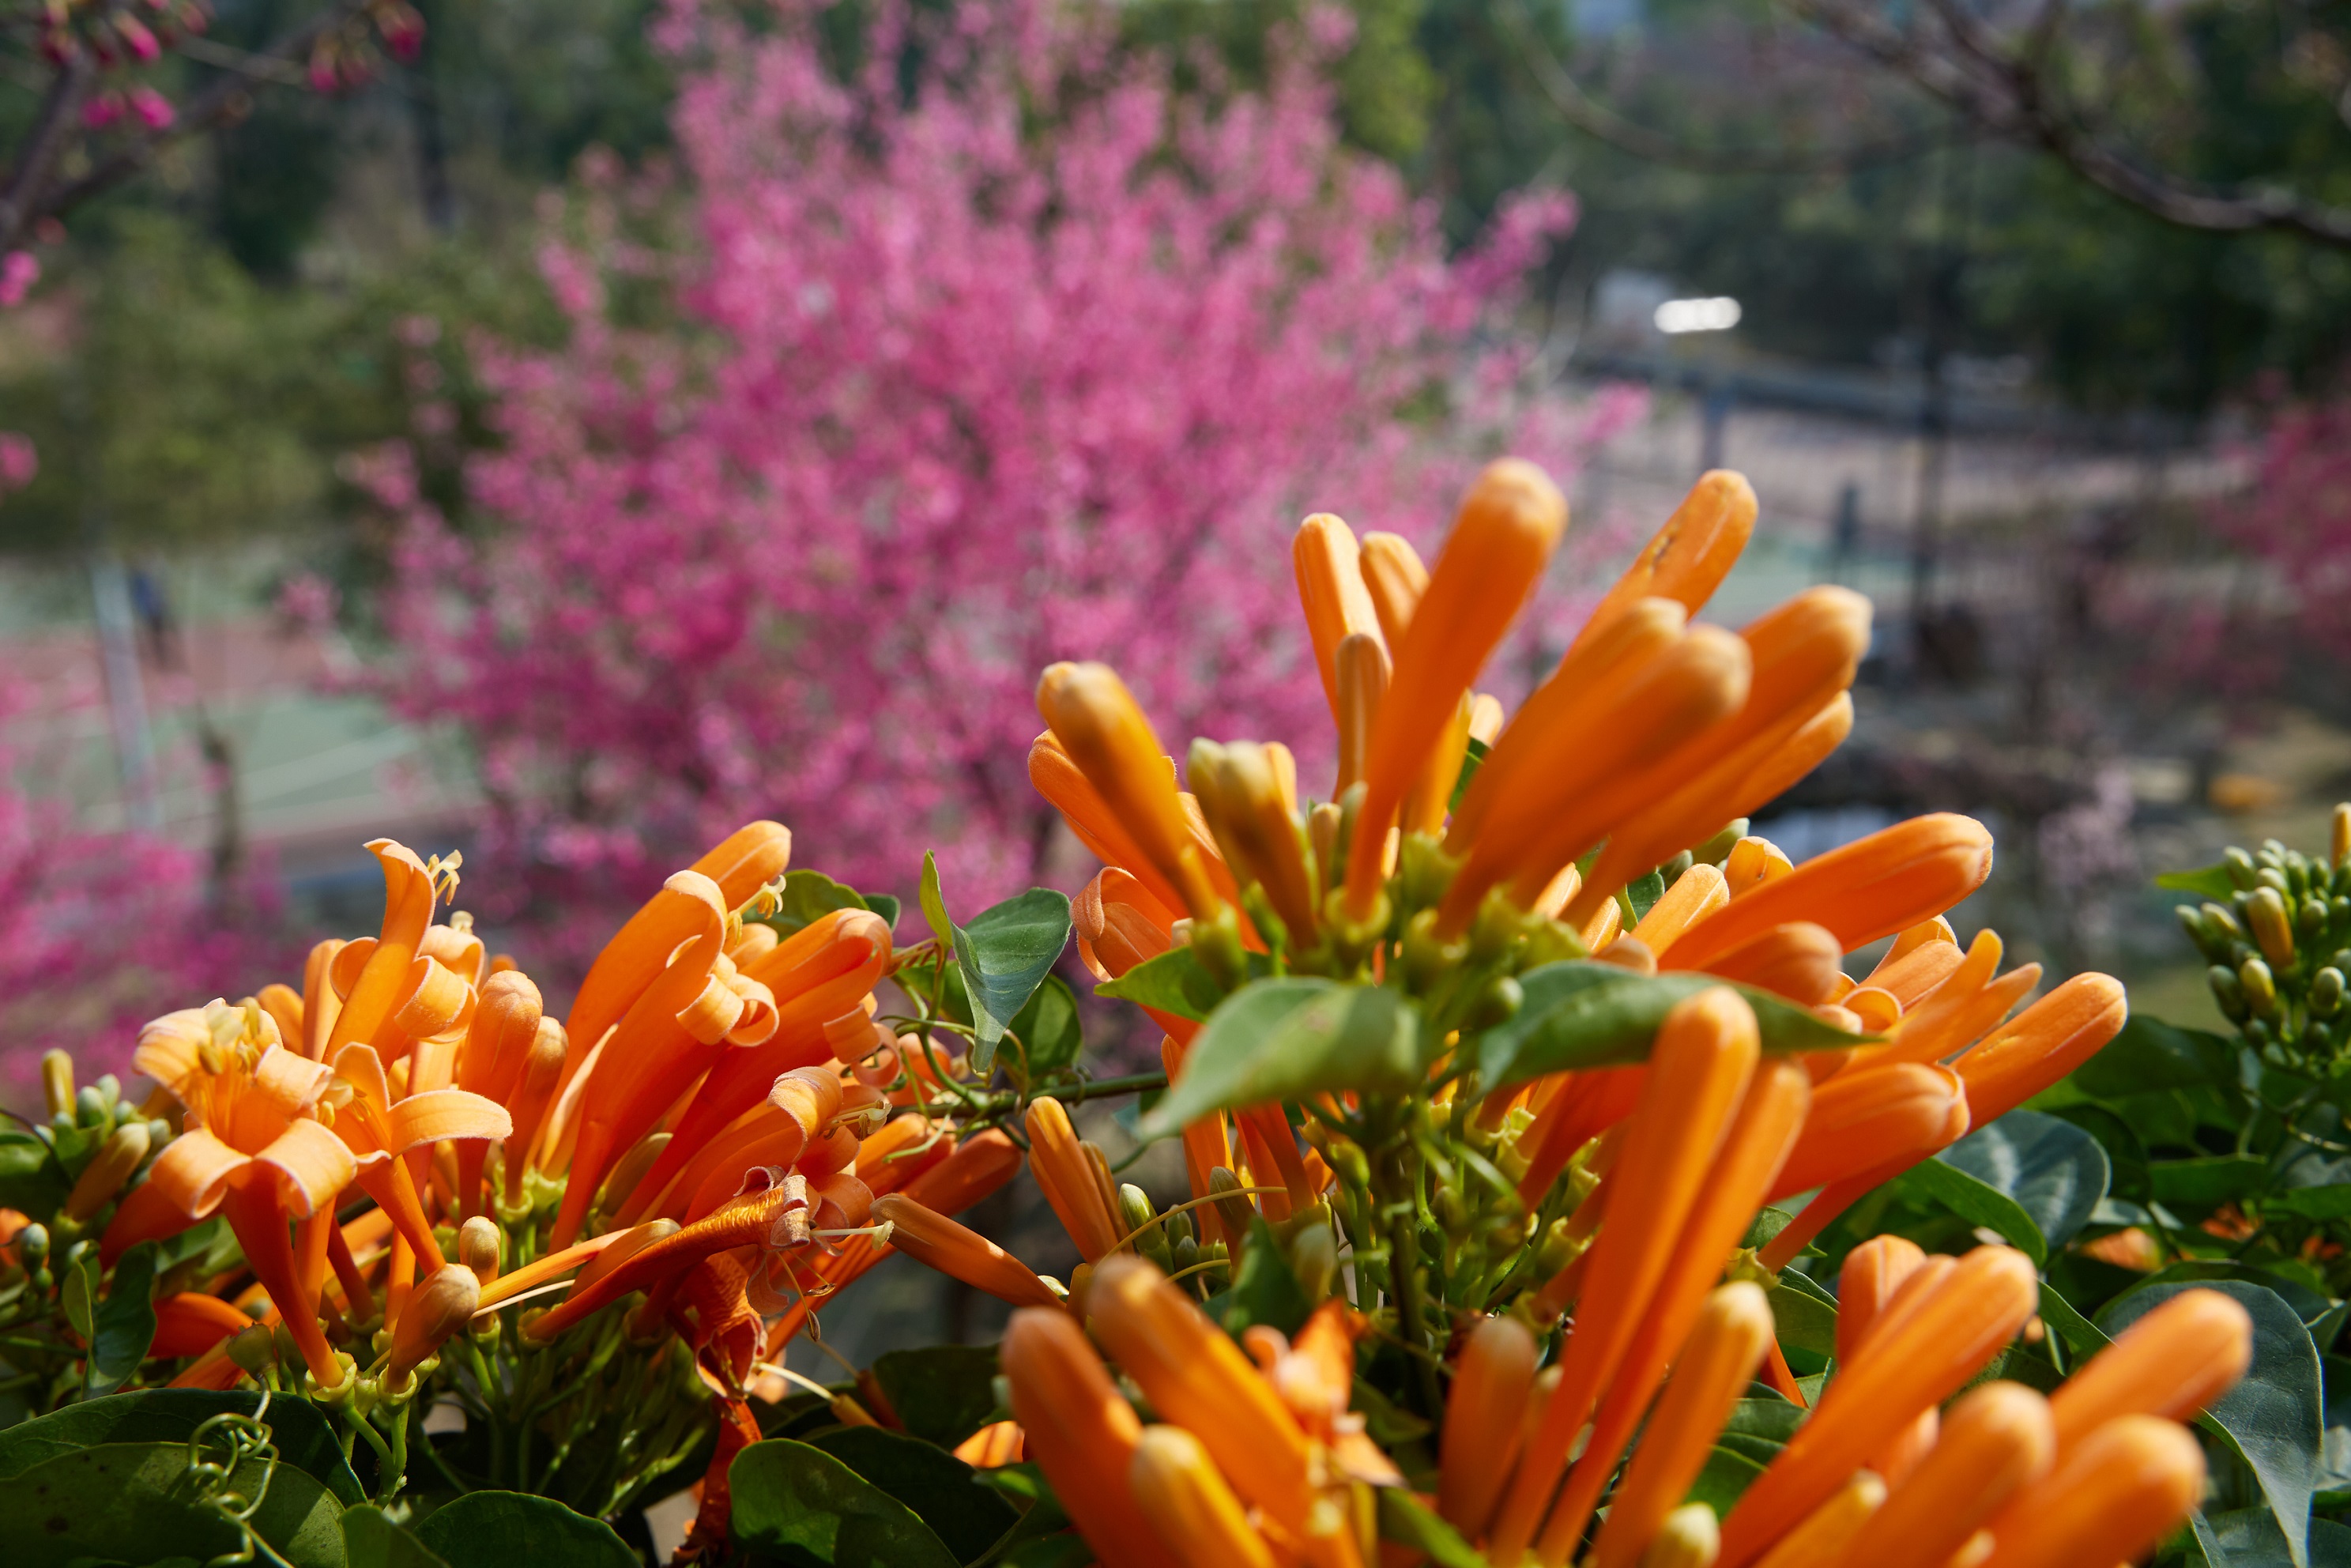 炮仗花與櫻花相互映襯是永吉公園春天最美的繽紛景色